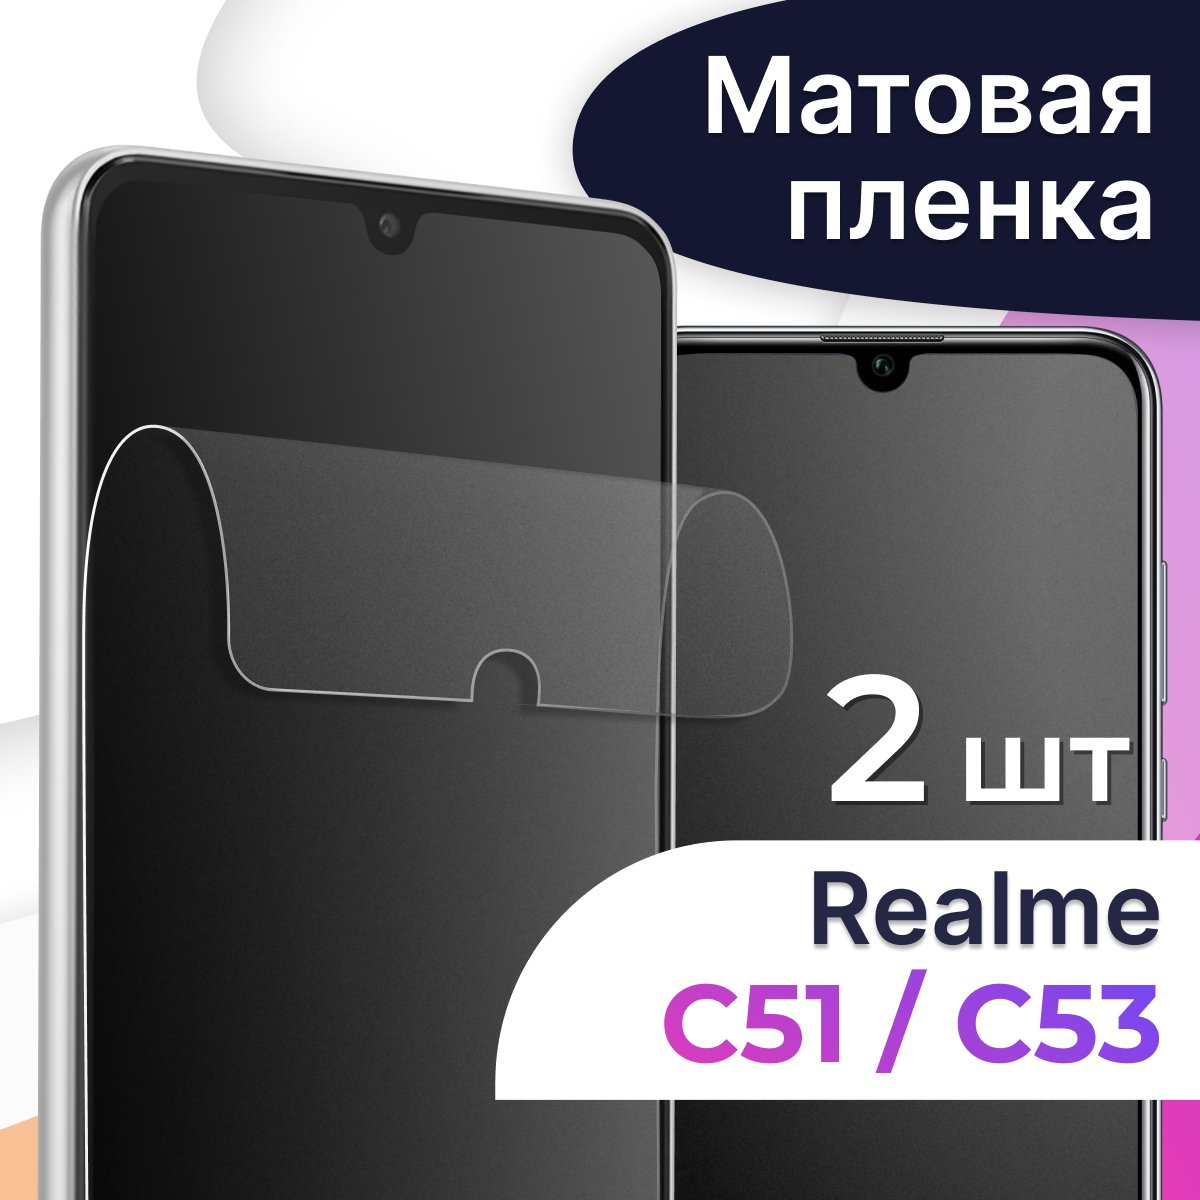 Матовая пленка на телефон Realme C51 и Realme C53 / Гидрогелевая противоударная пленка для смартфона Реалми С51 и Реалми С53 / Защитная пленка